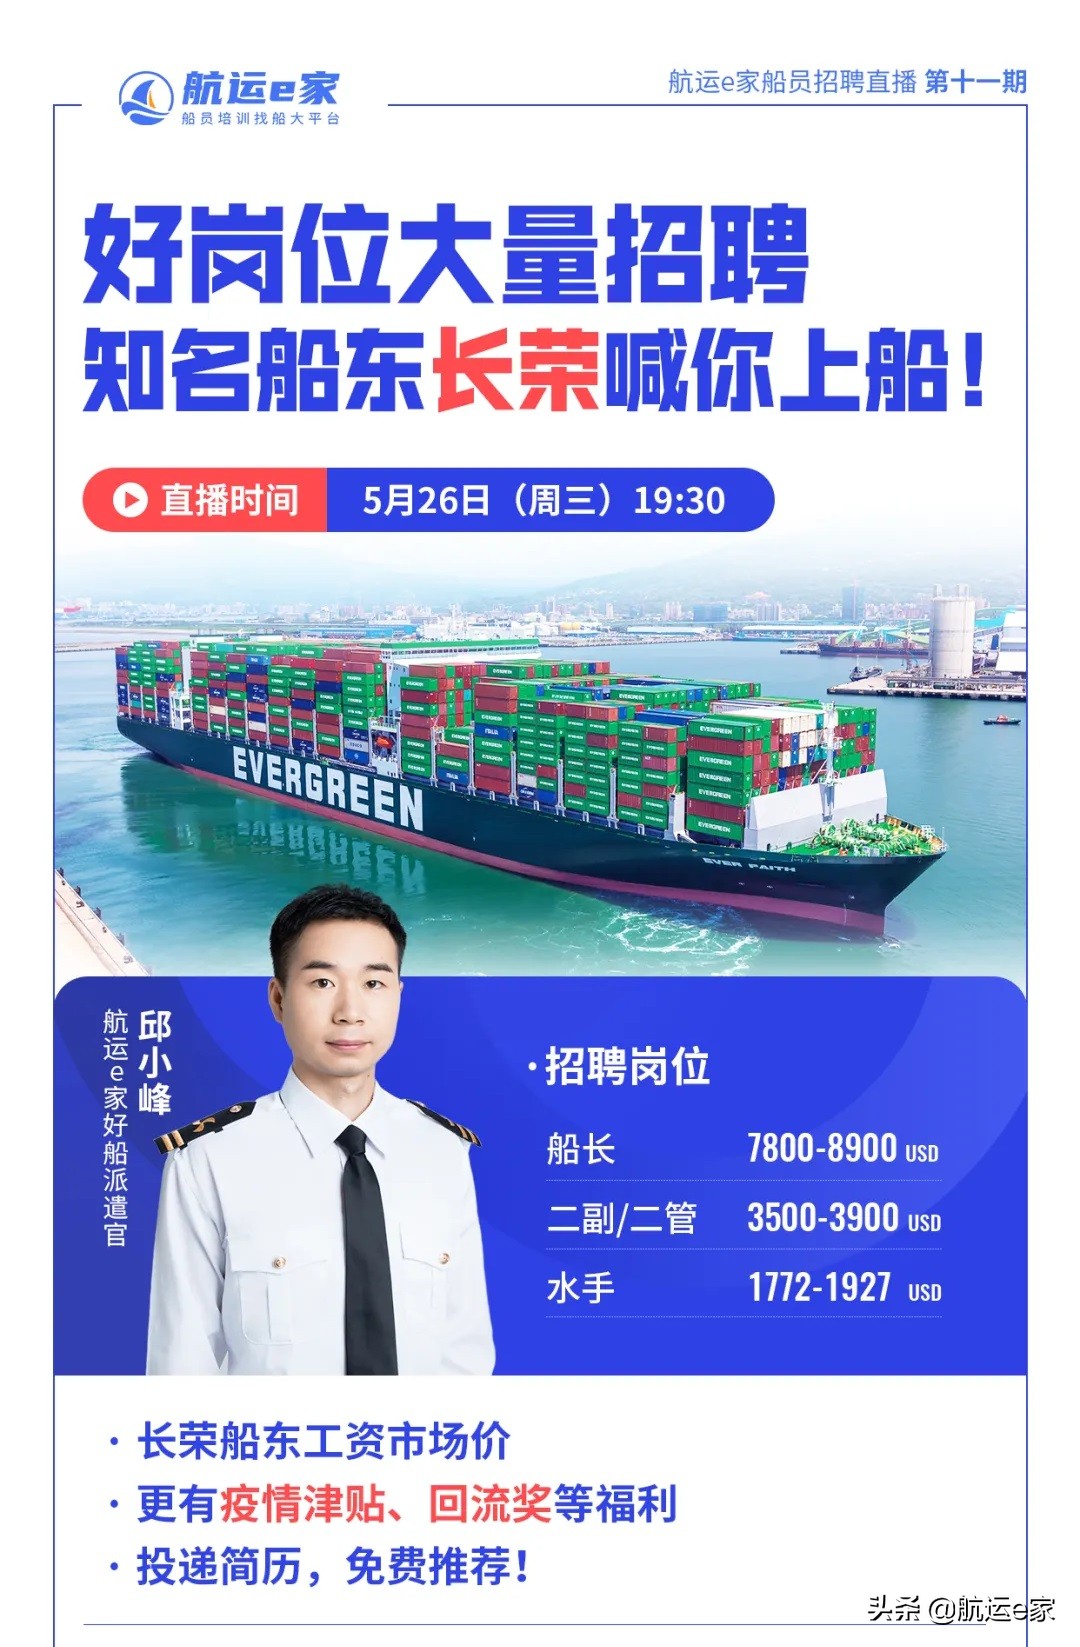 中国船员招聘网 官网（知名船东）-郑州富士康